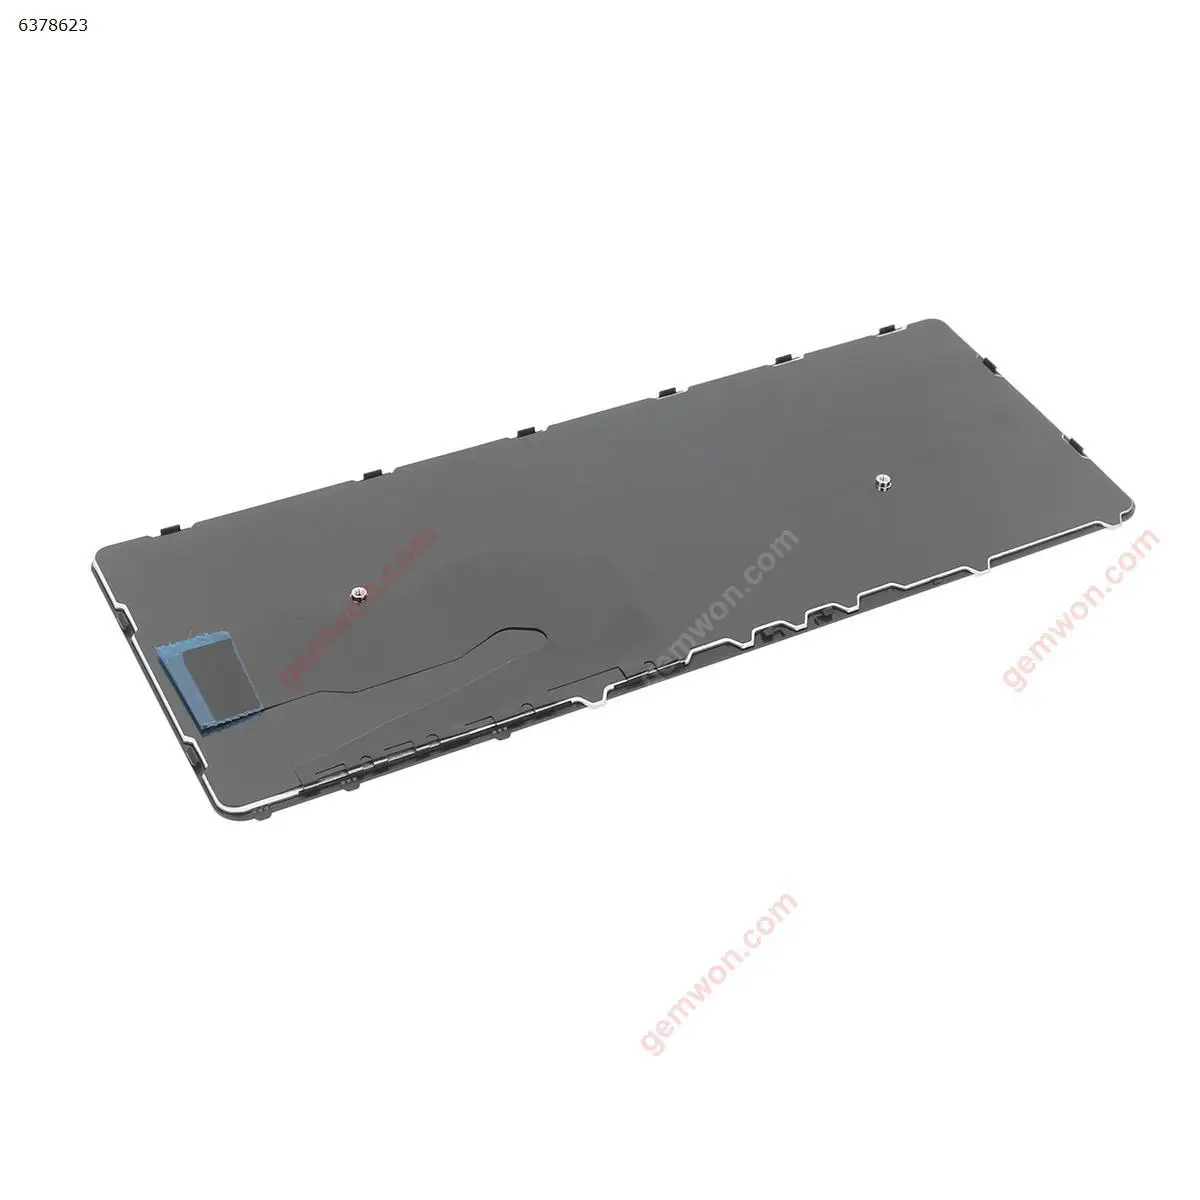 SP ספרדית חדש החלפת מקלדת HP EliteBook 840 840 G1 G2 850 G1 850 G2 740 G1 740 G2 נייד שחור